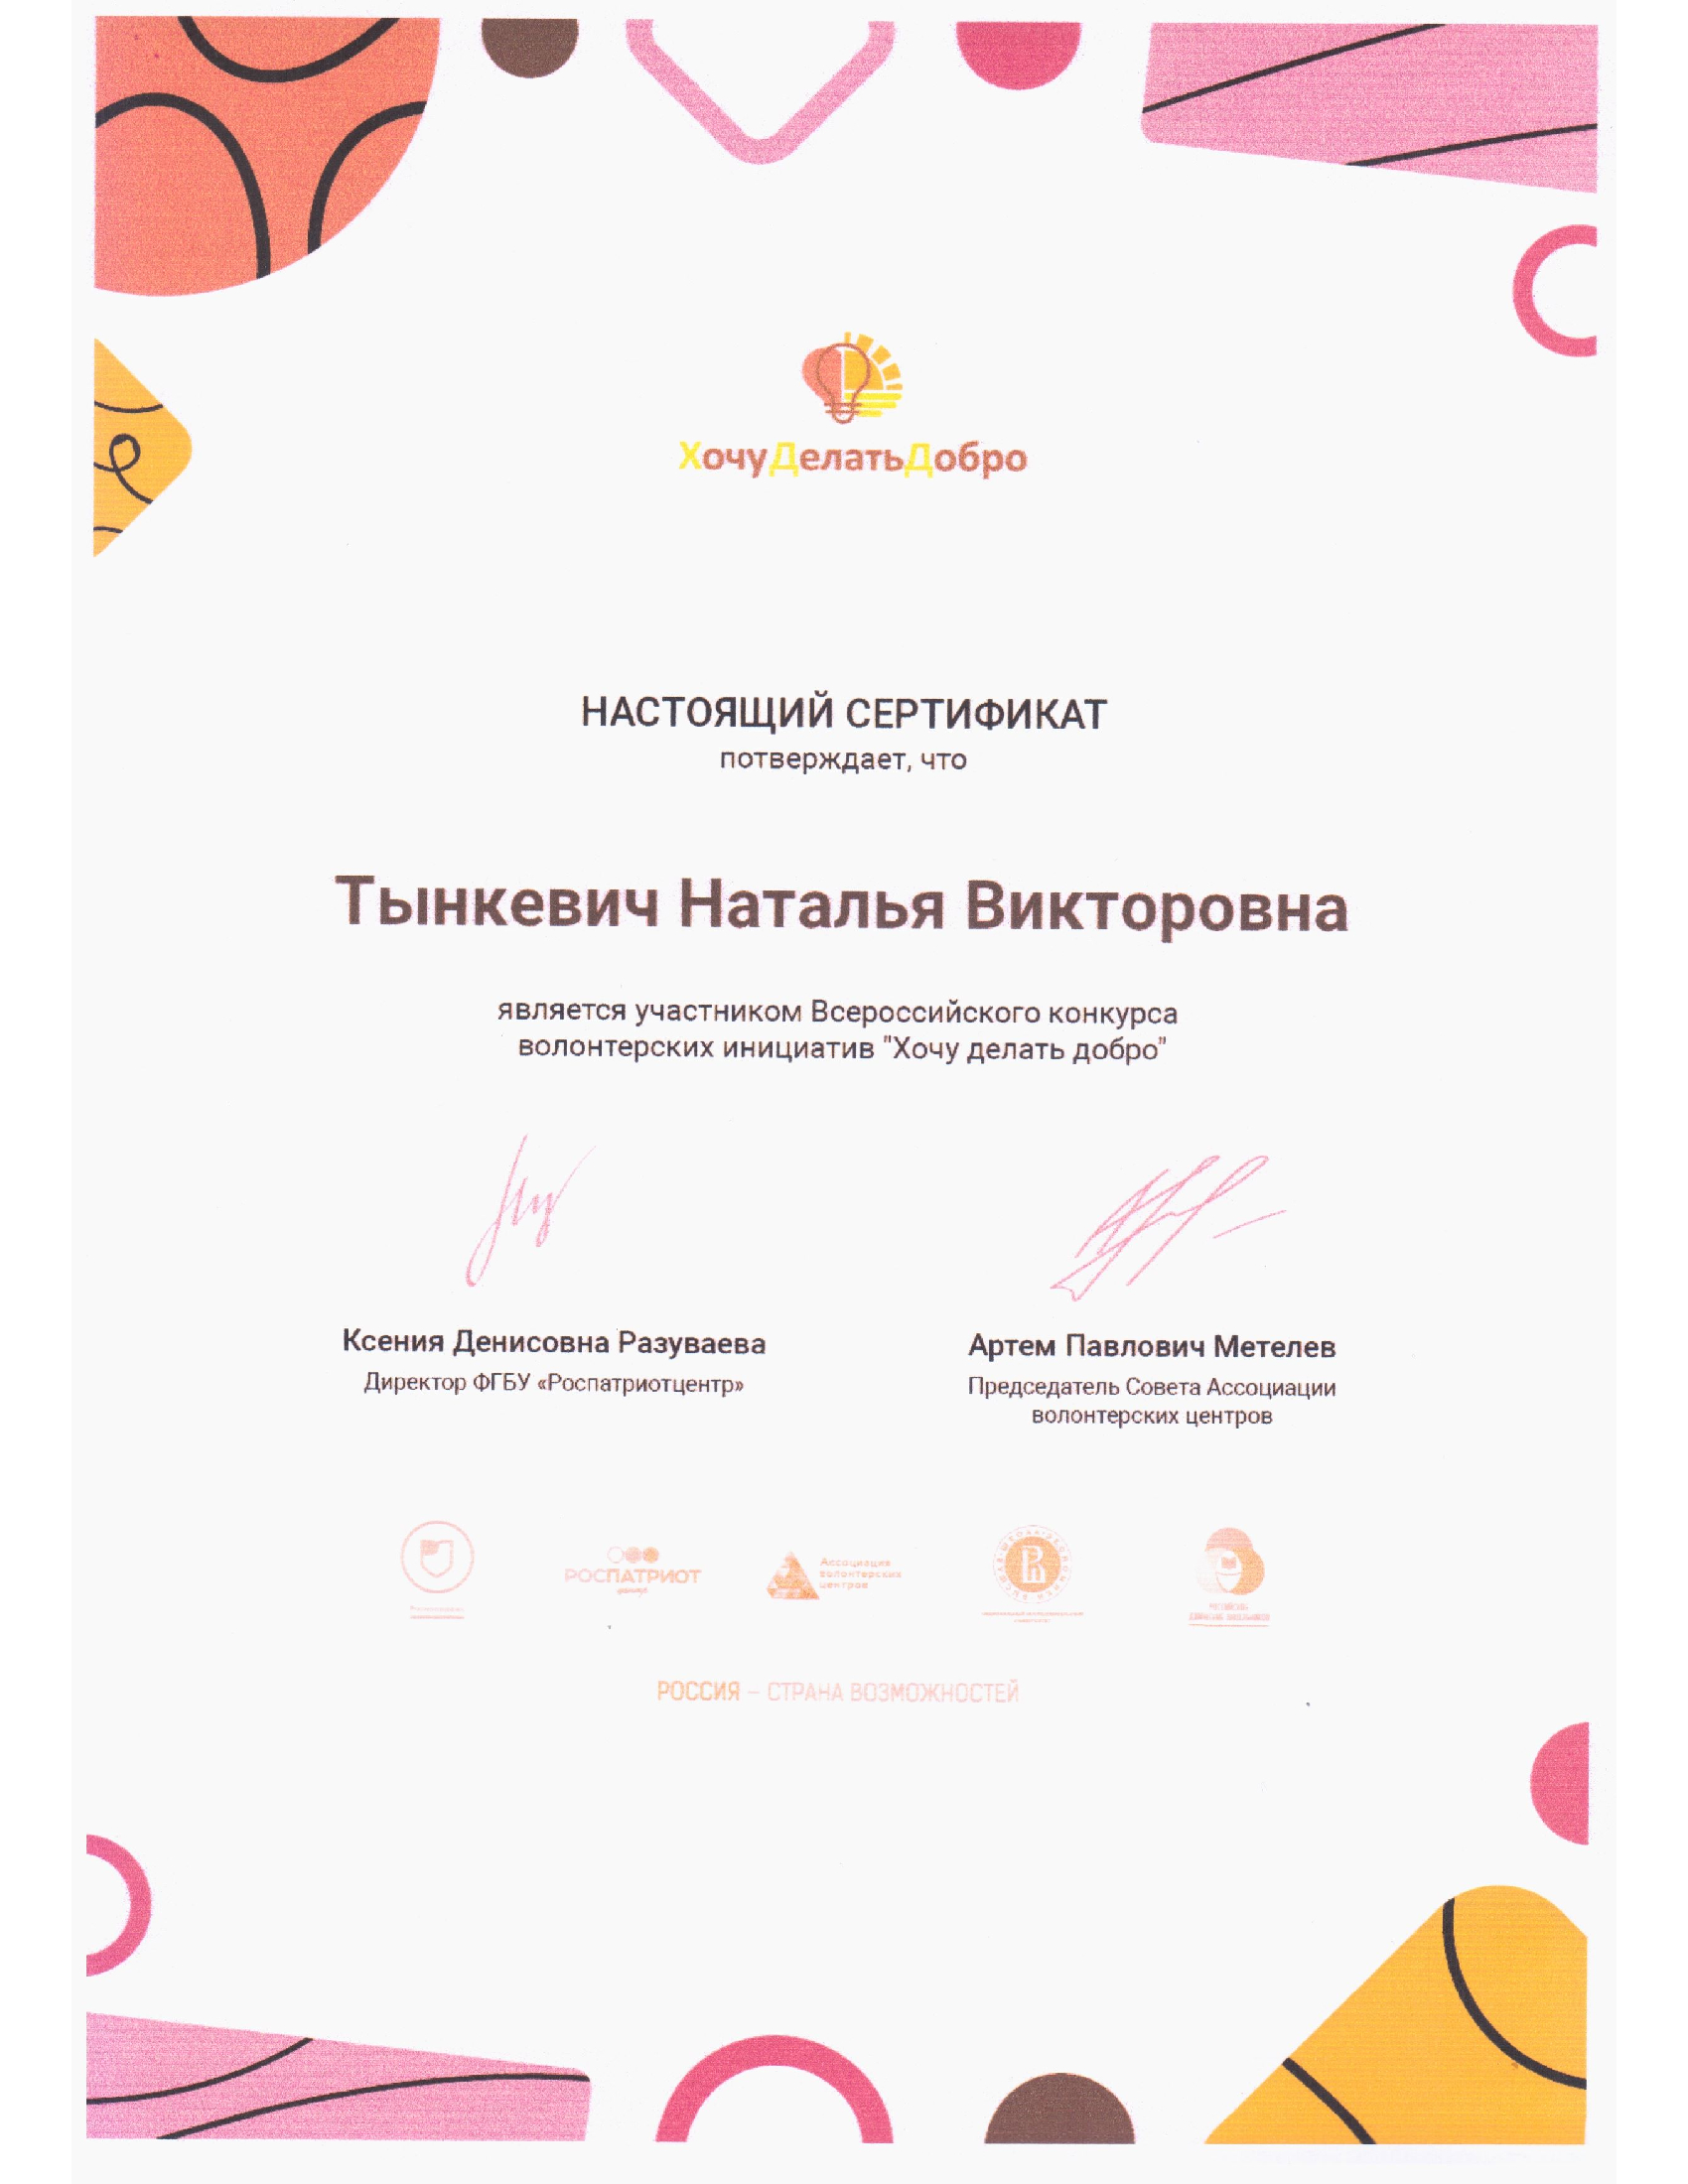 Сертификат участника Всероссийского конкурса волонтерских инициатив